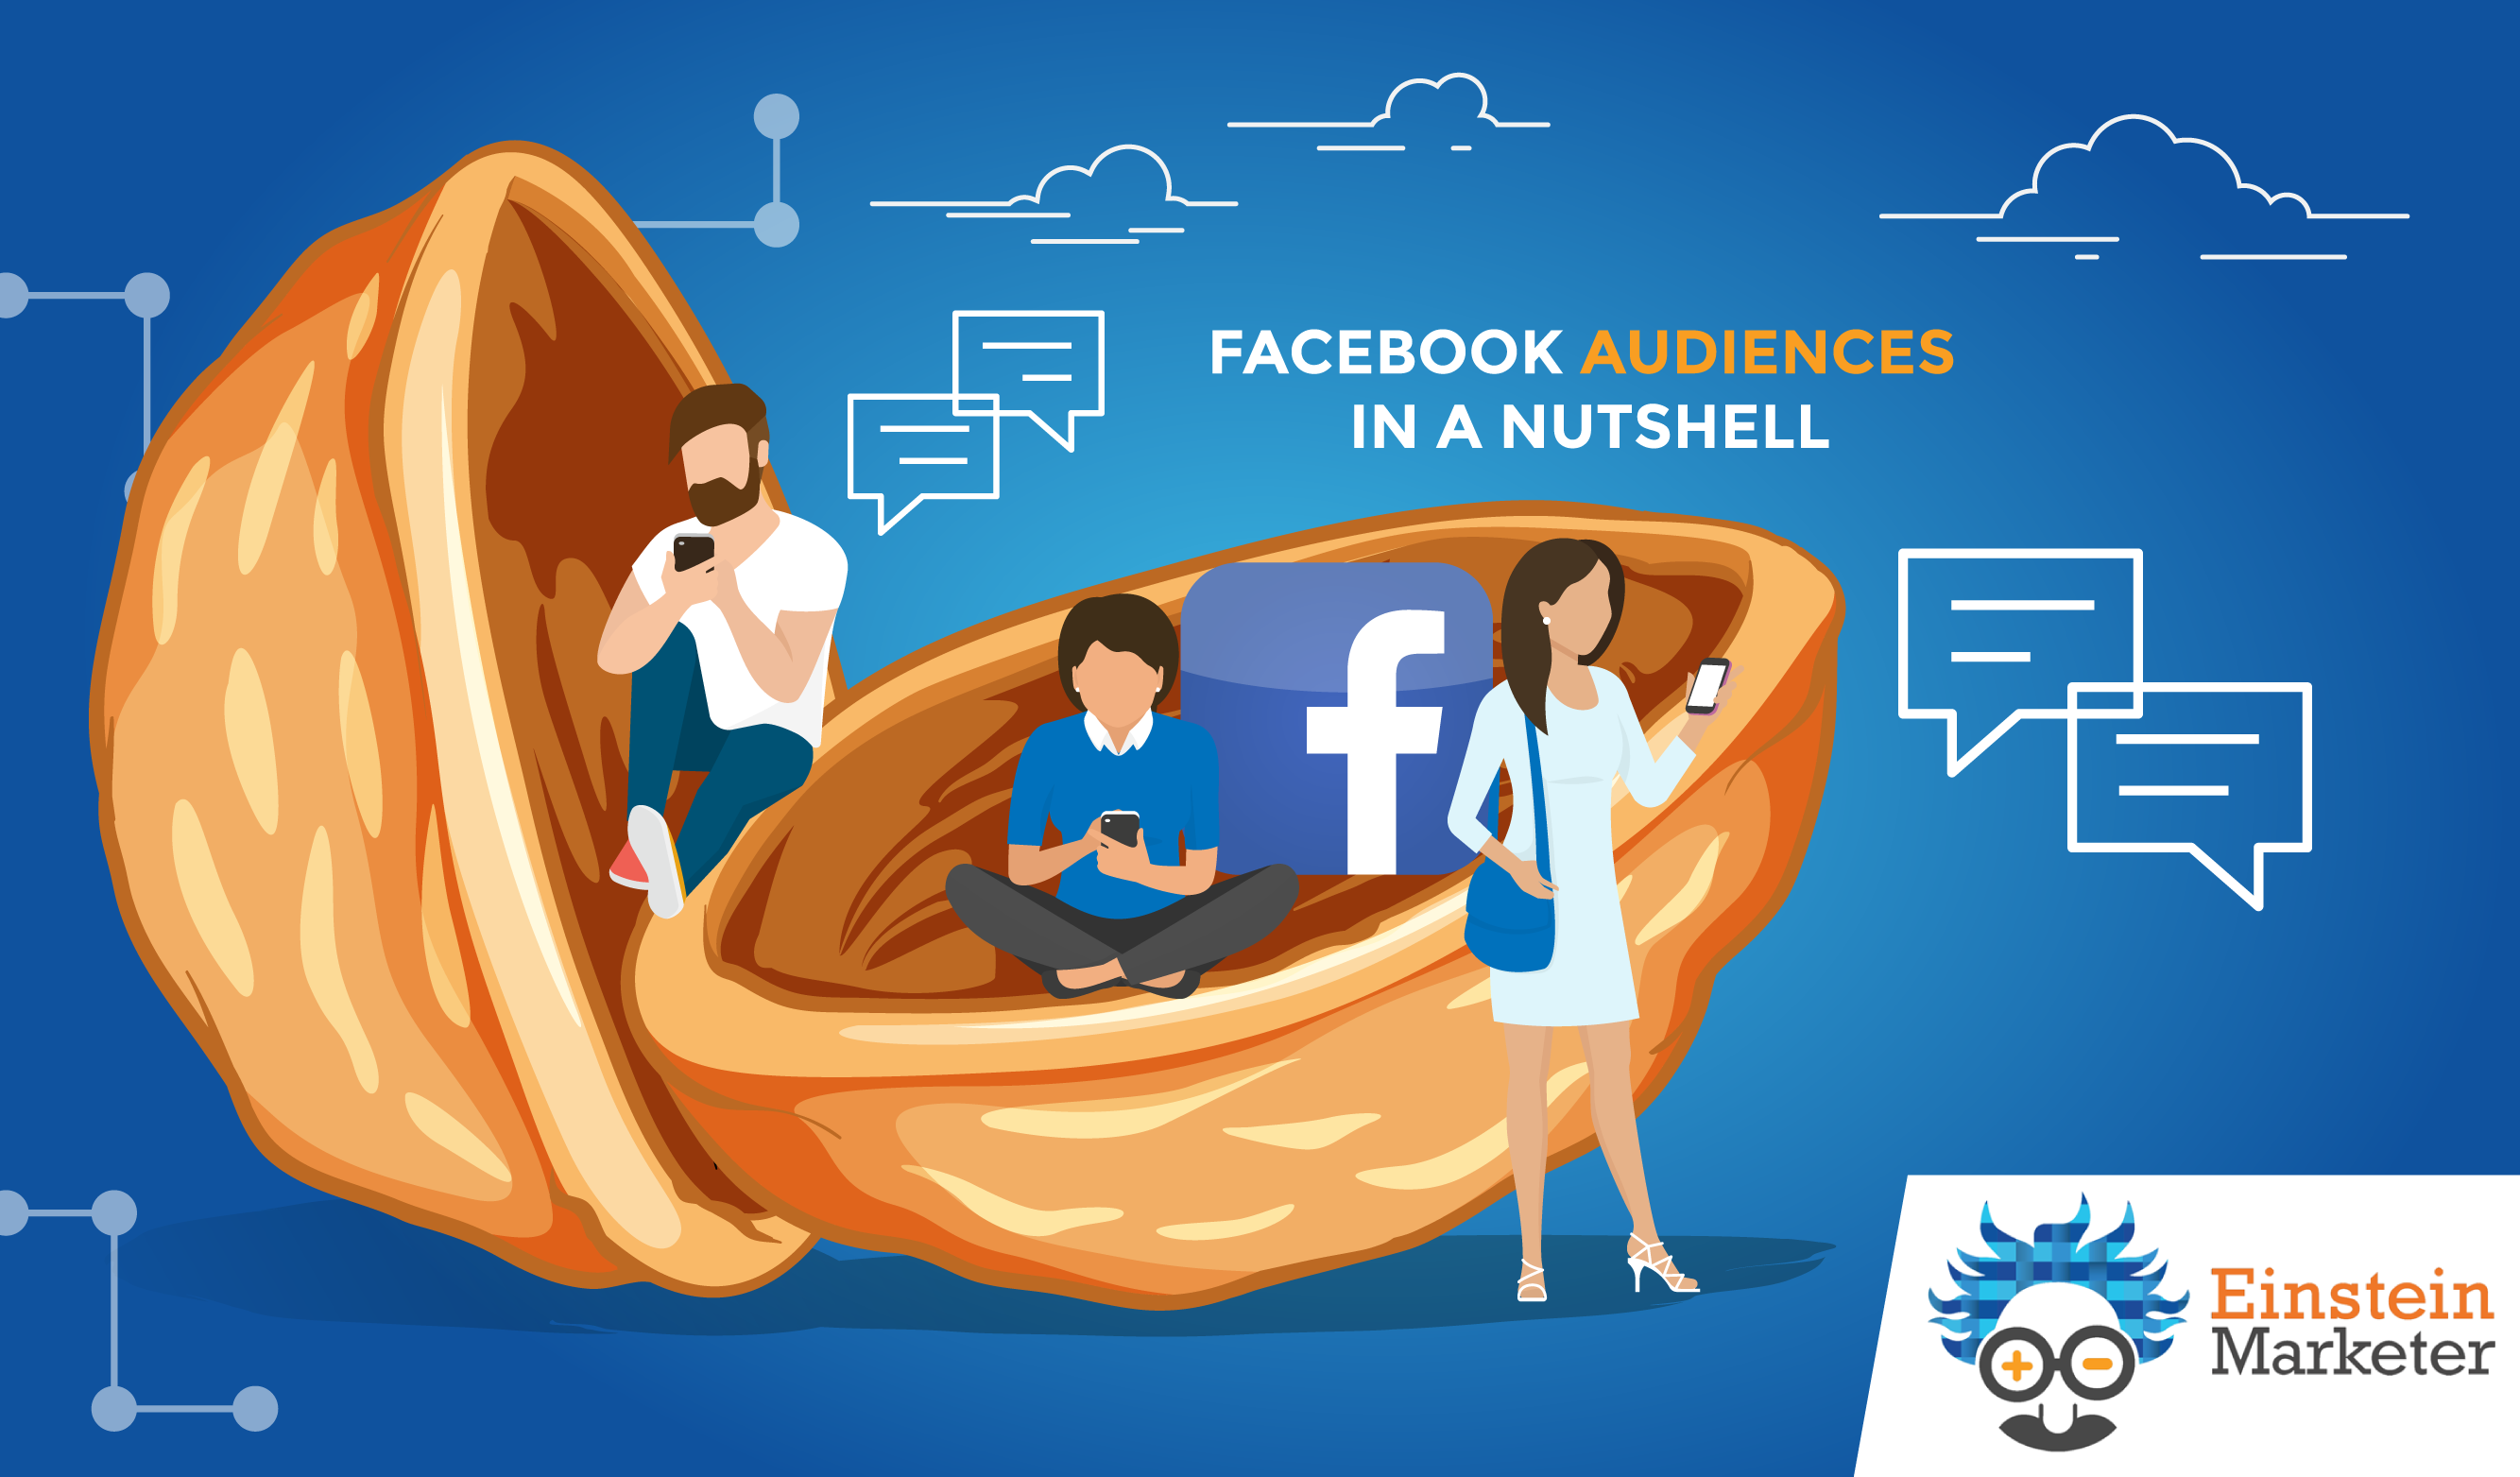 zeigarnik effect in marketing facebook audiences